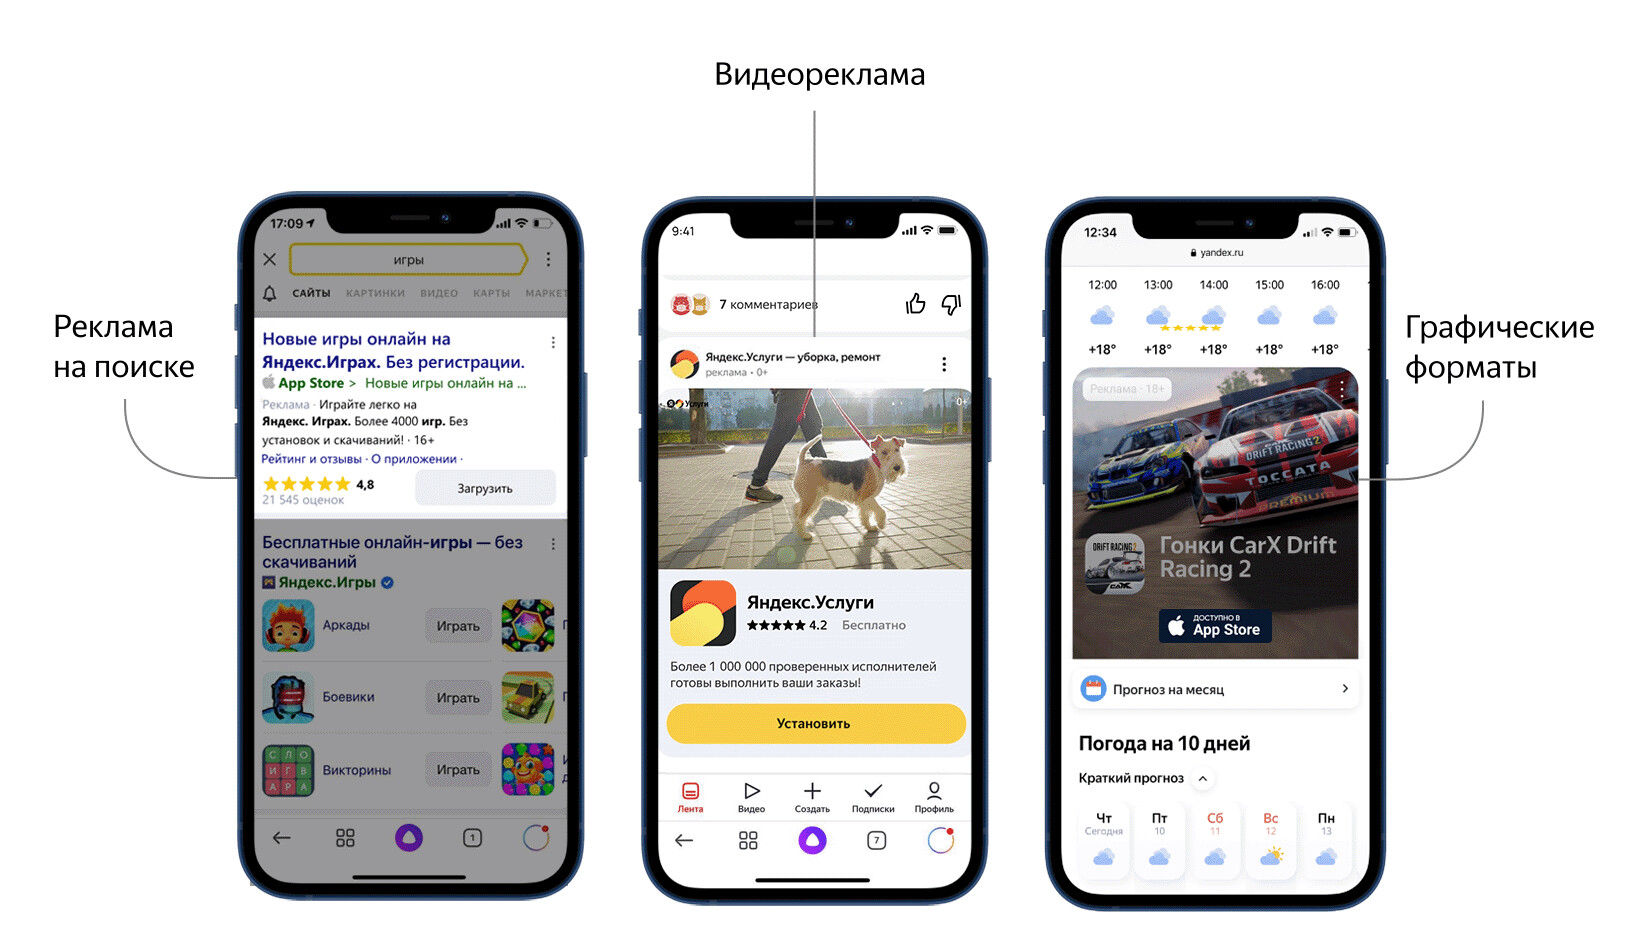 Яндекс обновил интерфейс для запуска рекламы мобильных приложений